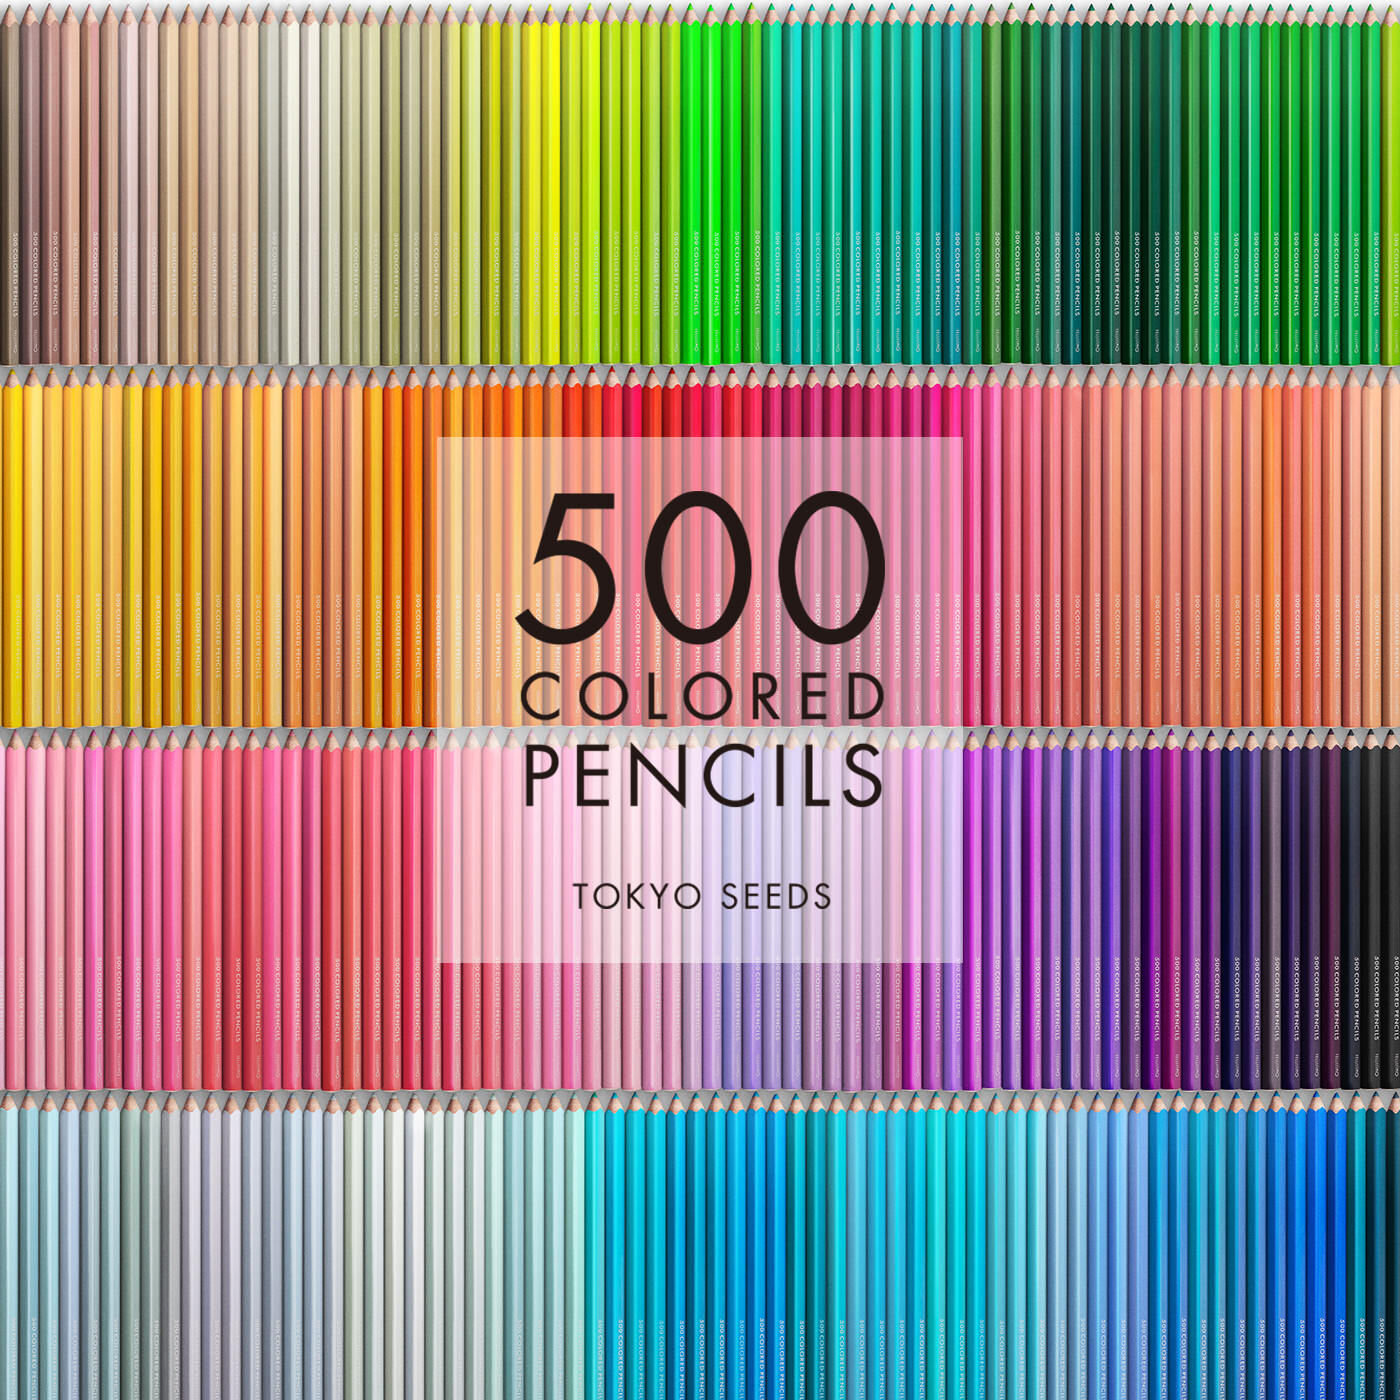 Real Stock|【349/500 BEDTIME STORIES】500色の色えんぴつ TOKYO SEEDS|1992年、世界初の「500色」という膨大な色数の色えんぴつが誕生して以来、その販売数は発売当初から合わせると、世界55ヵ国10万セット以上。今回、メイド・イン・ジャパンにこだわり、すべてが新しく生まれ変わって登場しました。